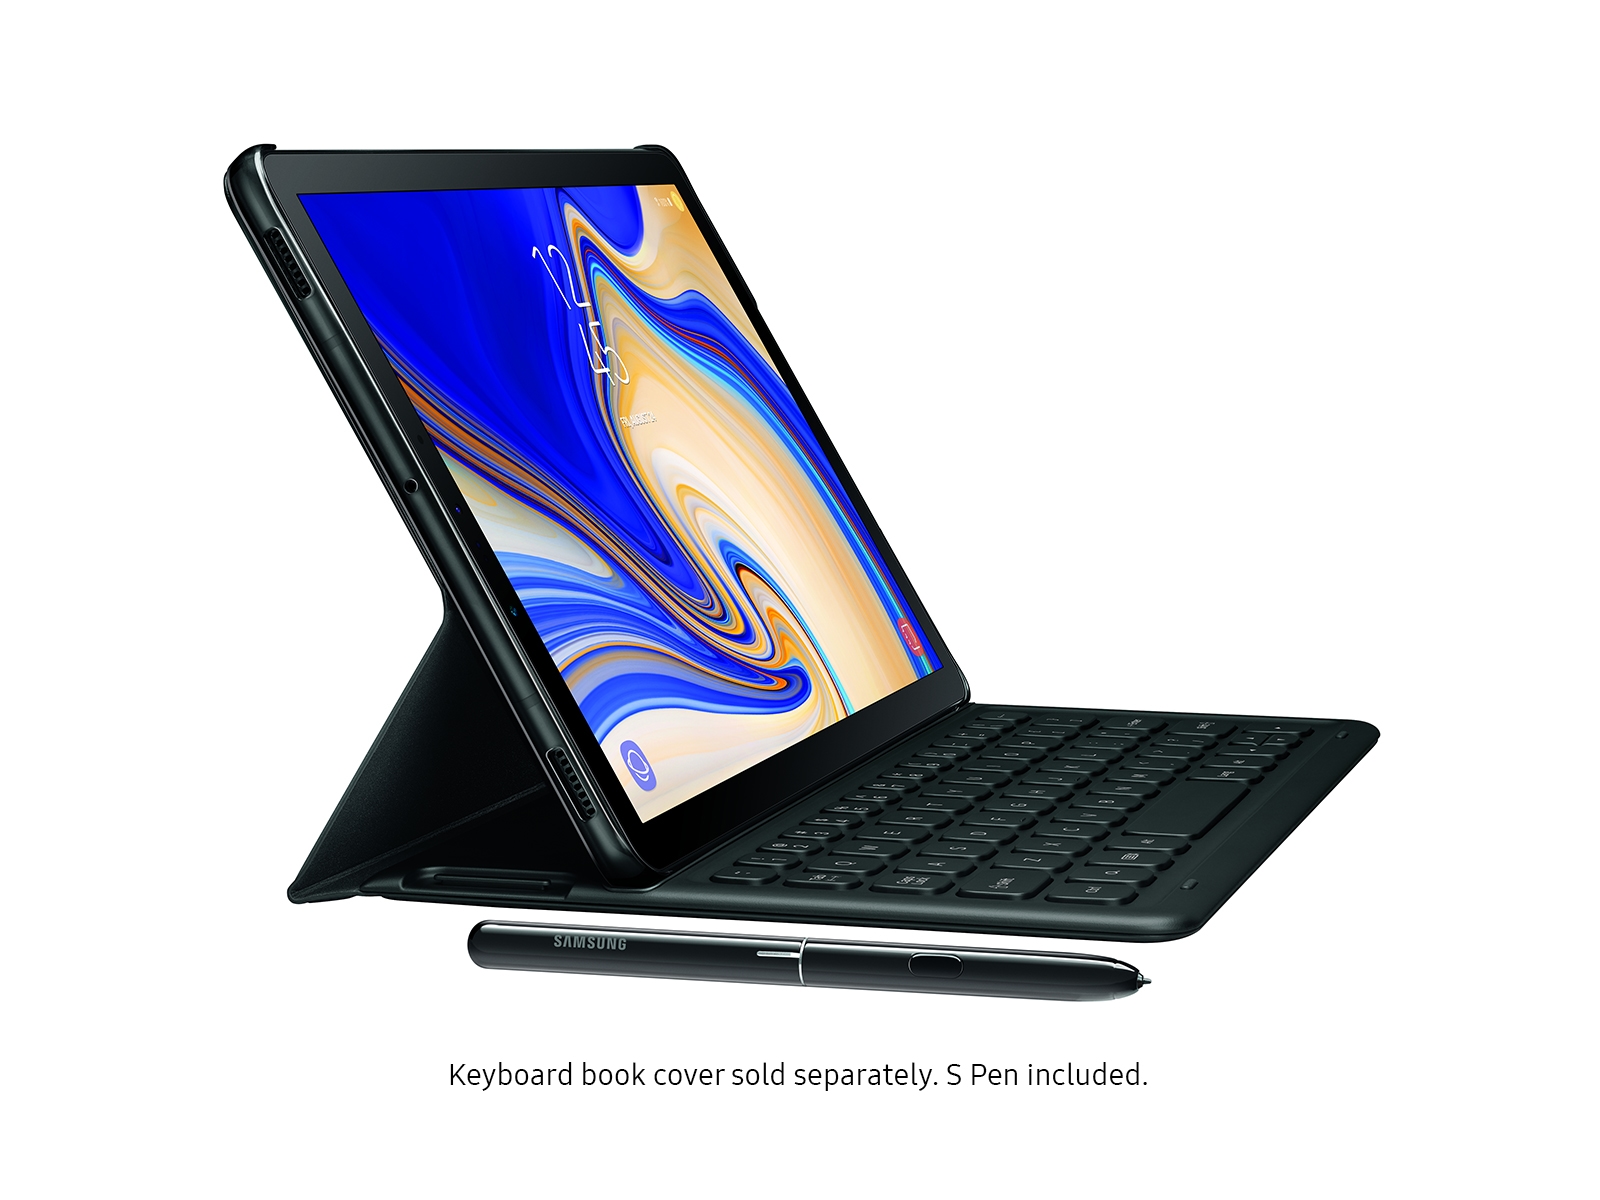 Galaxy Tab S4 10.5â (S Pen included), 64GB, Black, AT&T